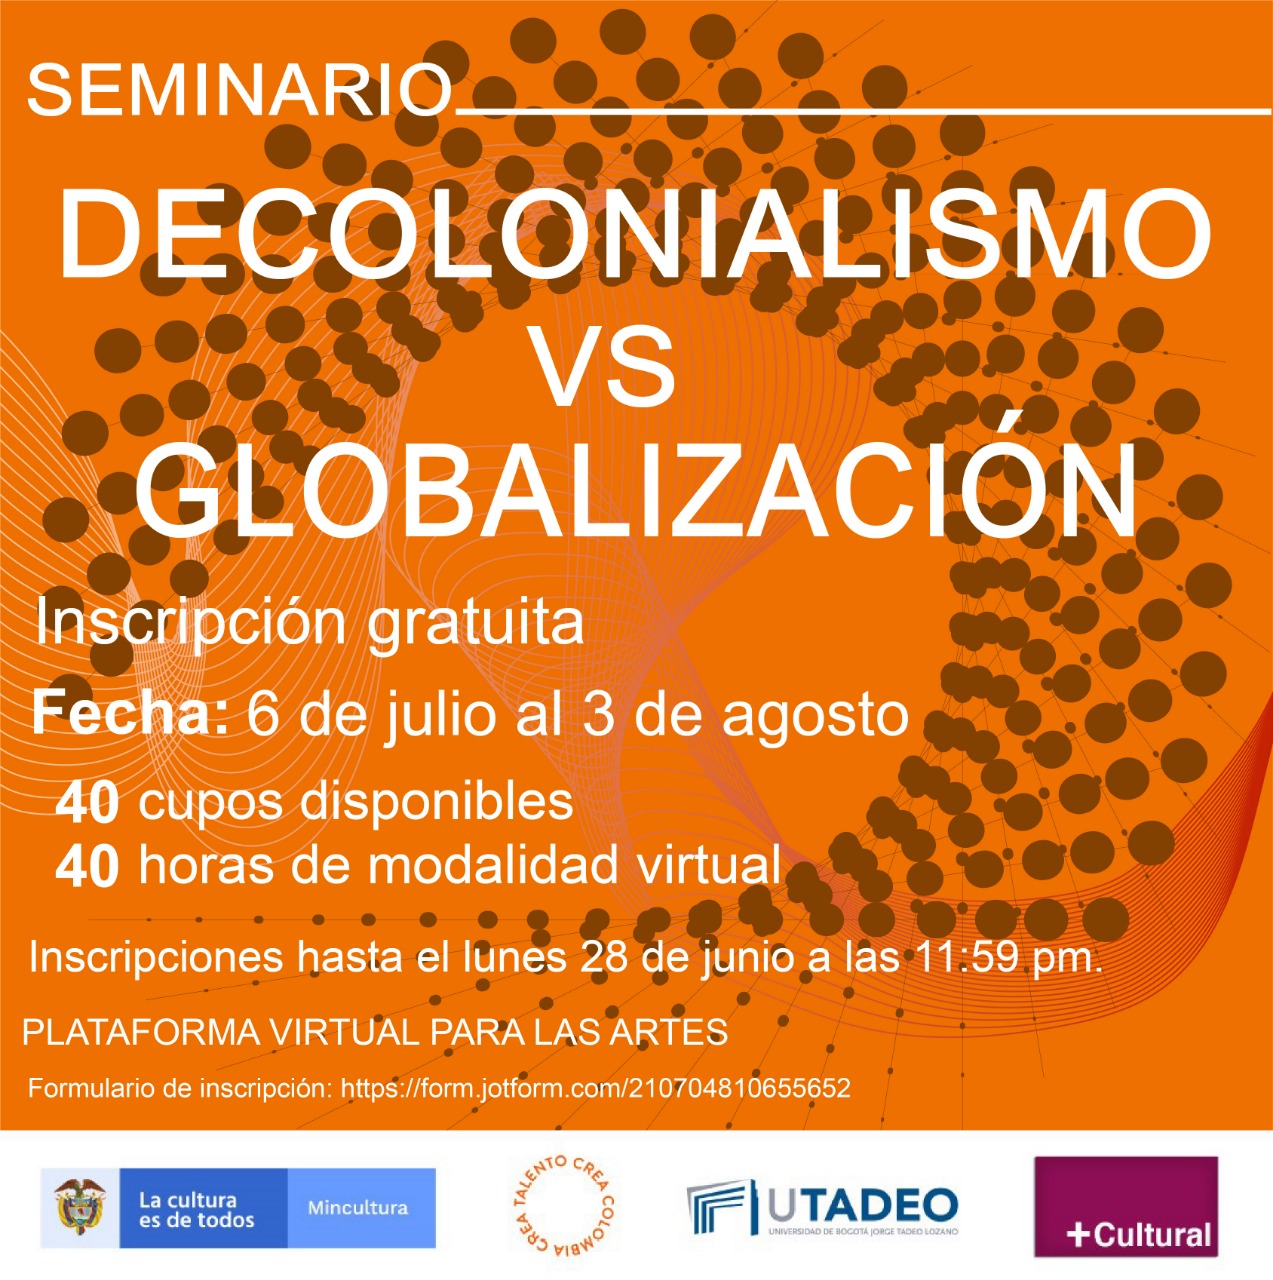 Participe en el seminario ‘Decolonialismo vs Globalización’, diseñado por MinCultura